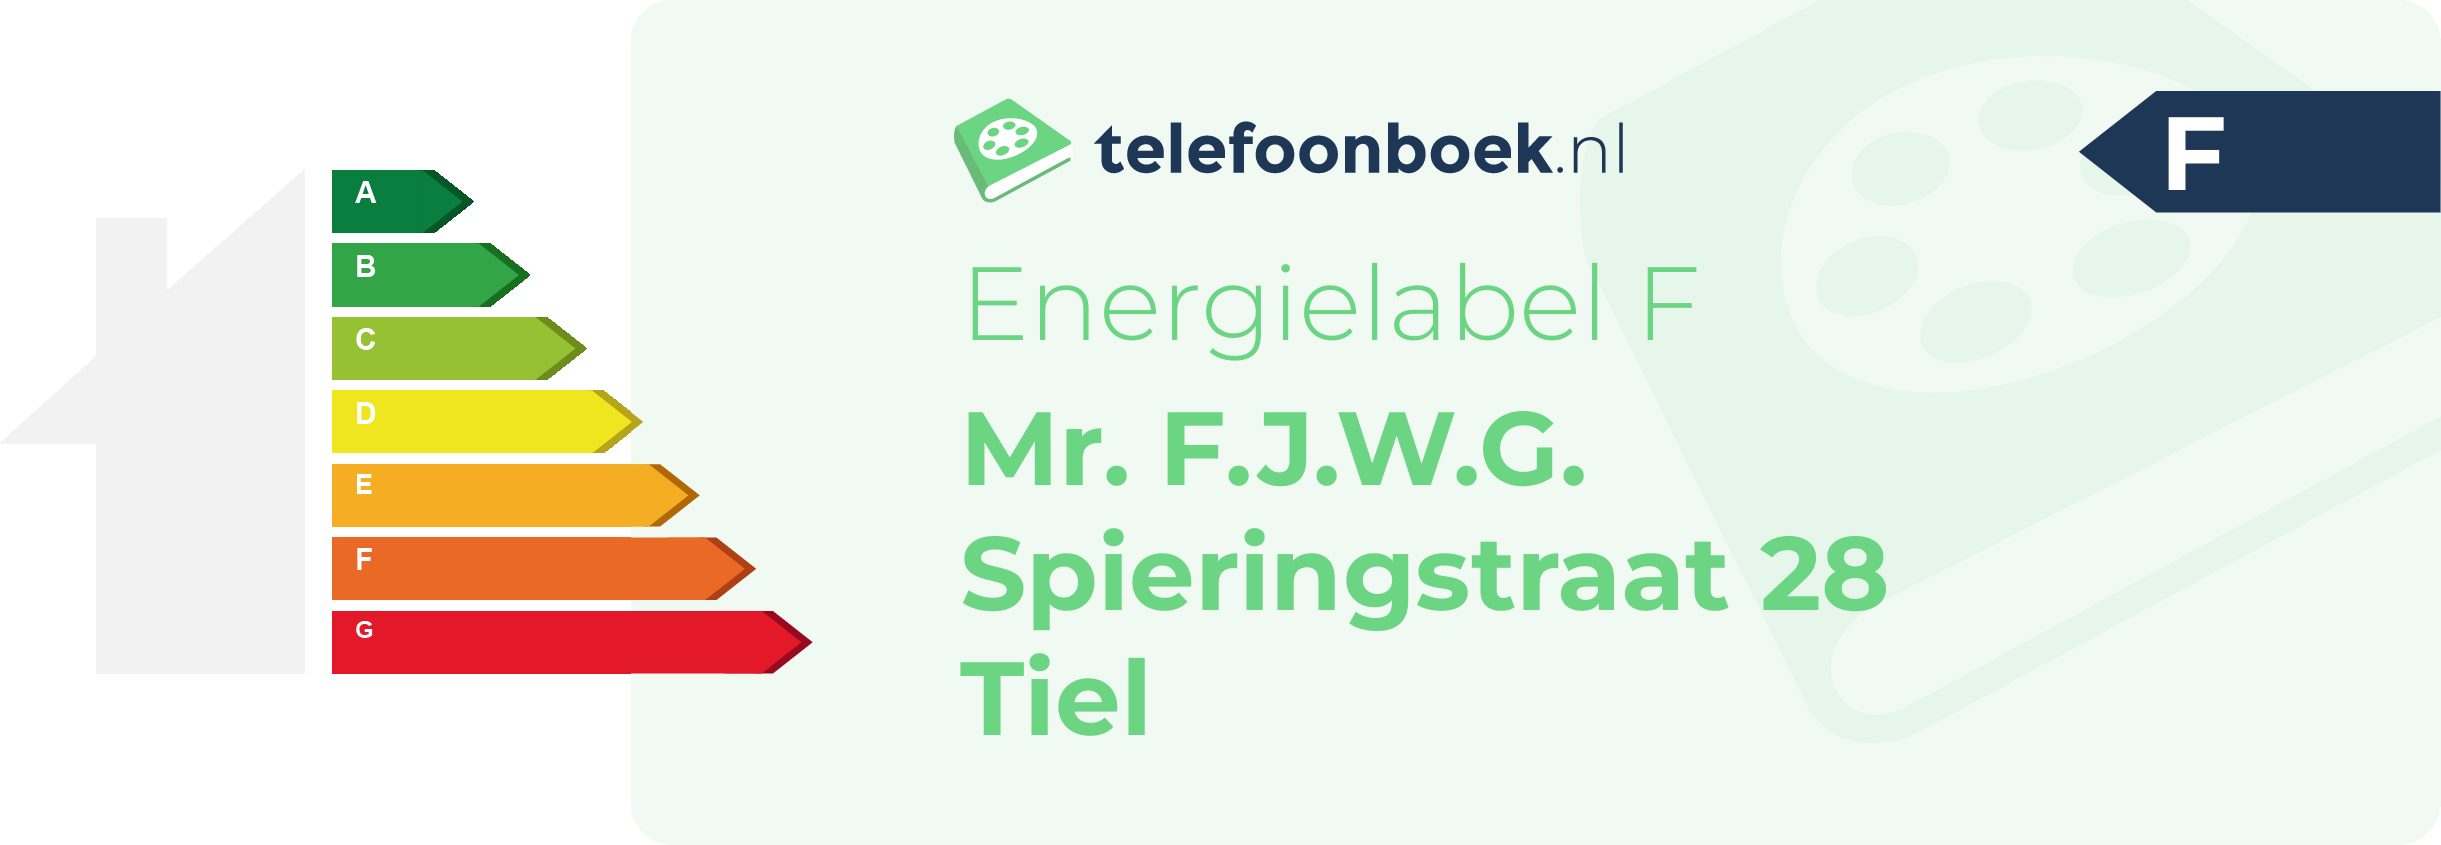 Energielabel Mr. F.J.W.G. Spieringstraat 28 Tiel